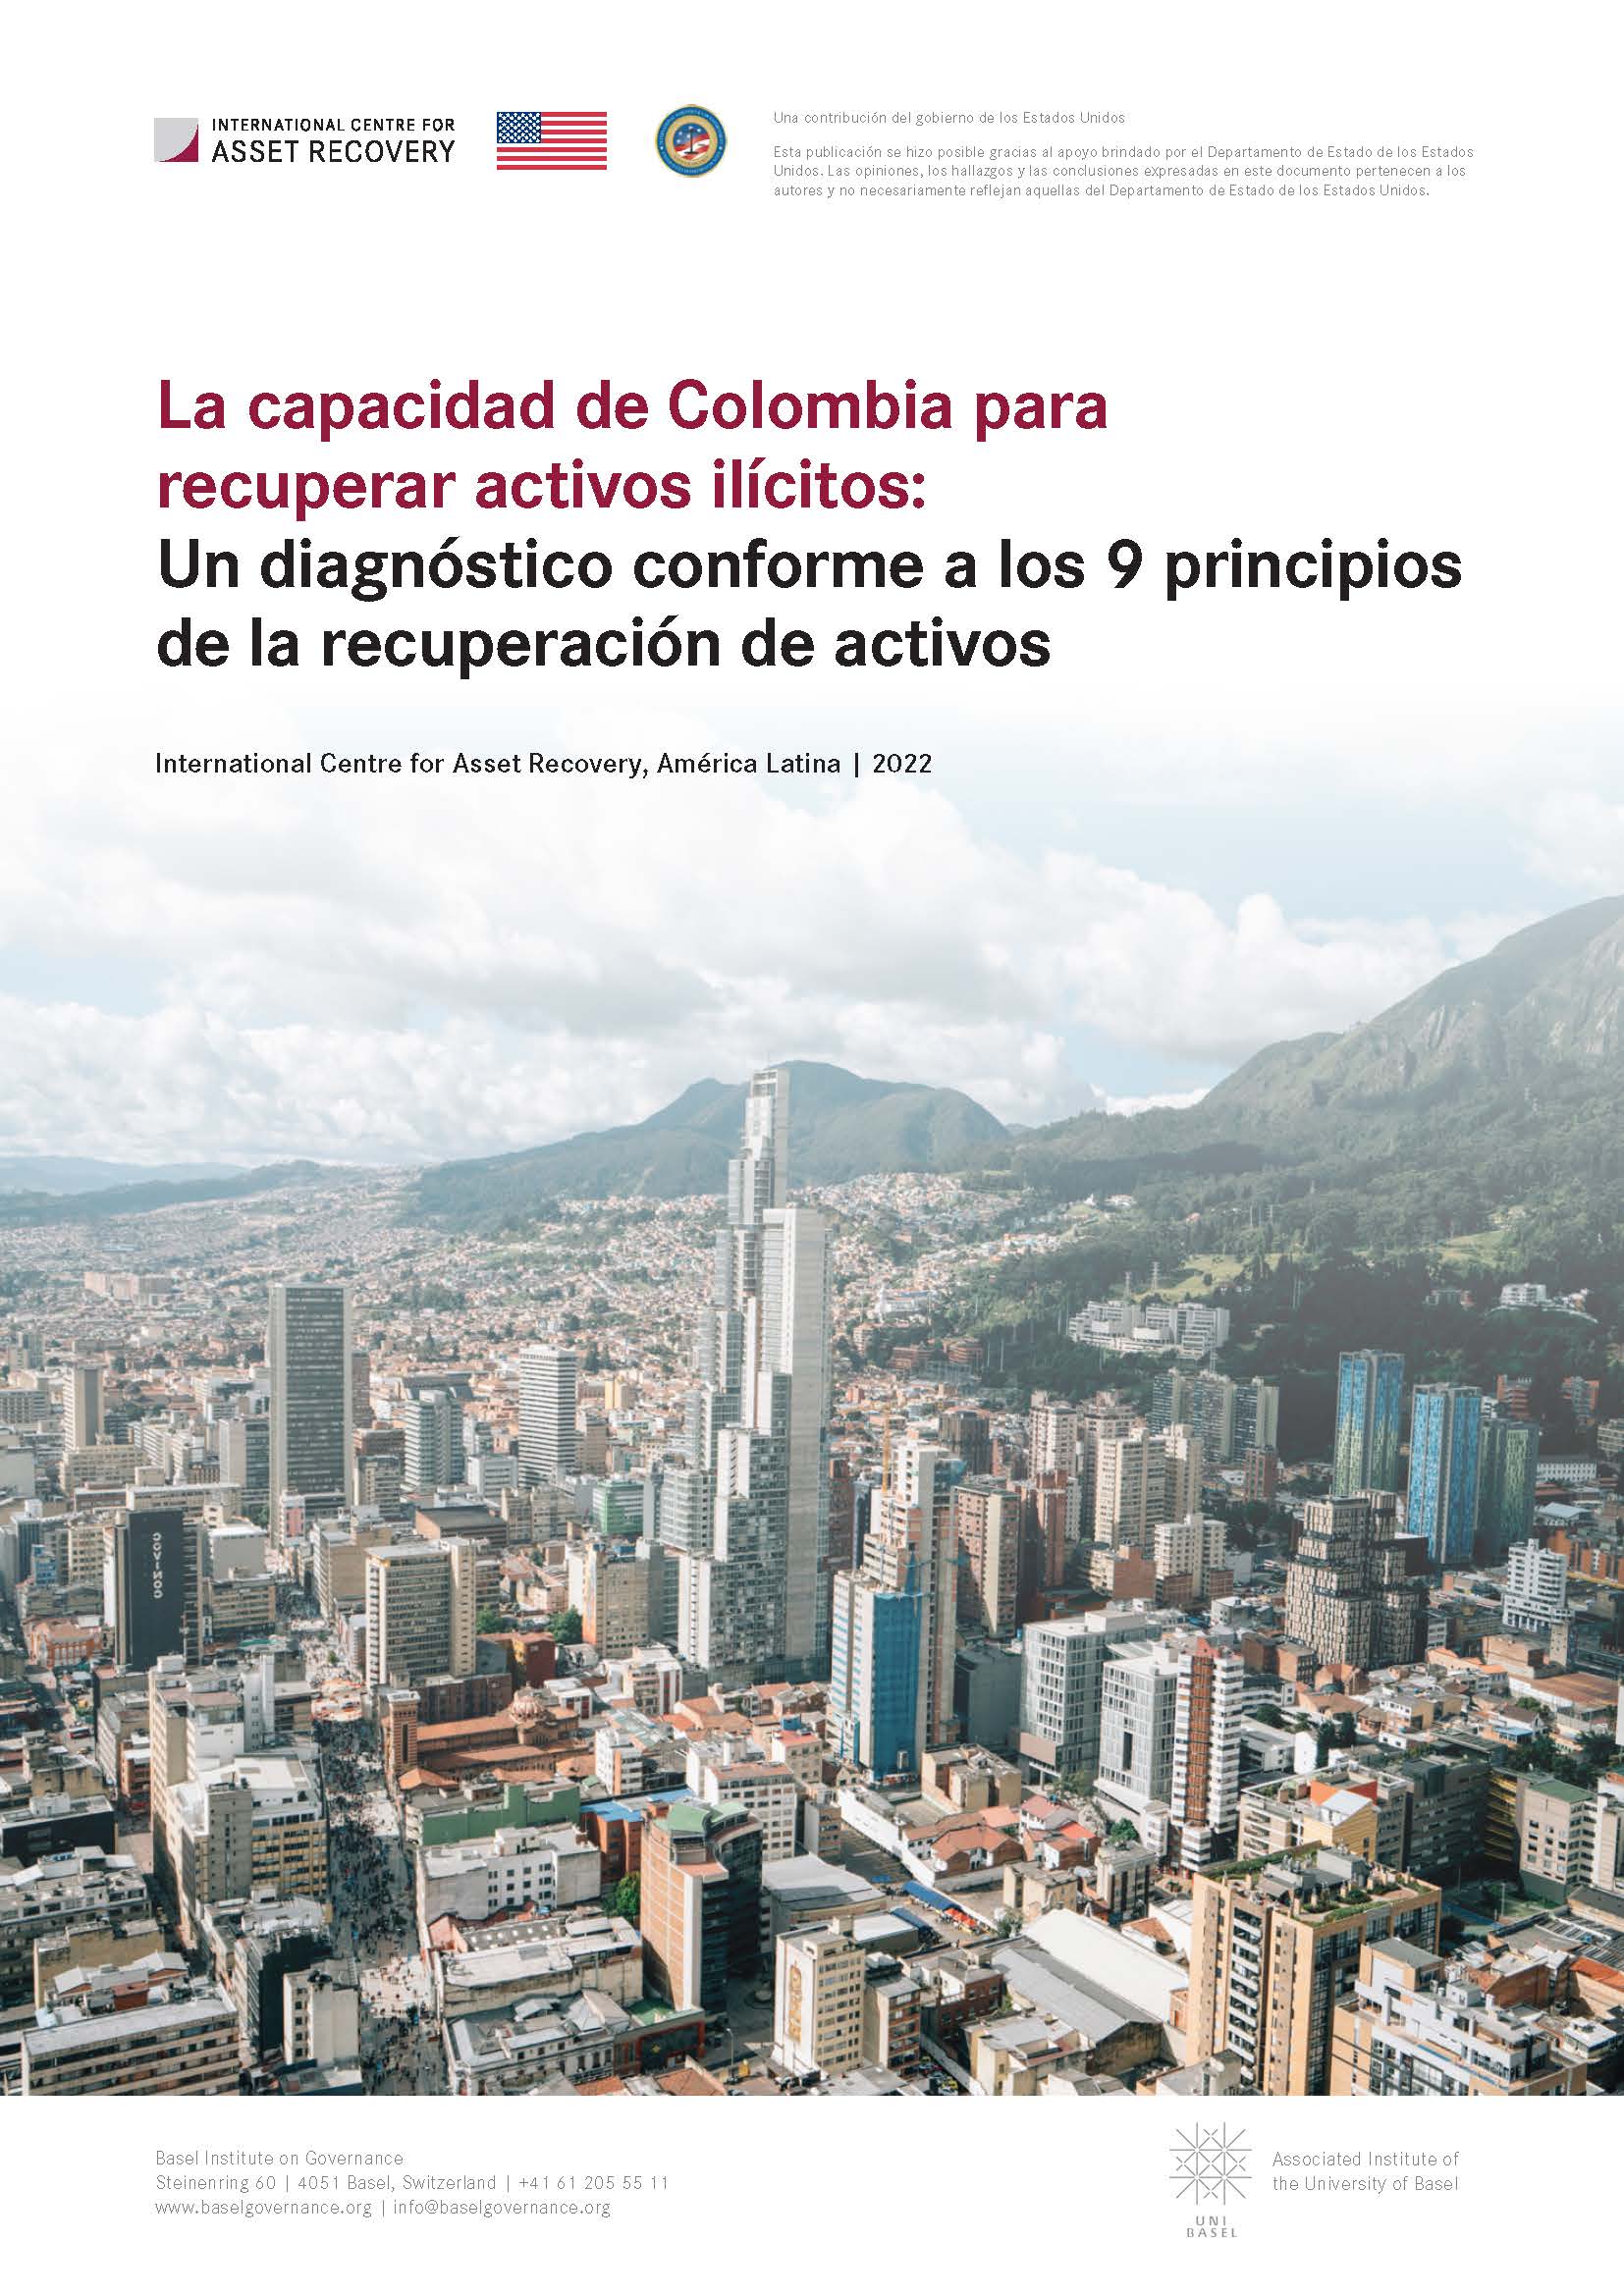 La capacidad de Colombia para recuperar activos ilícitos: Un diagnóstico conforme a los 9 principios de la recuperación de activos